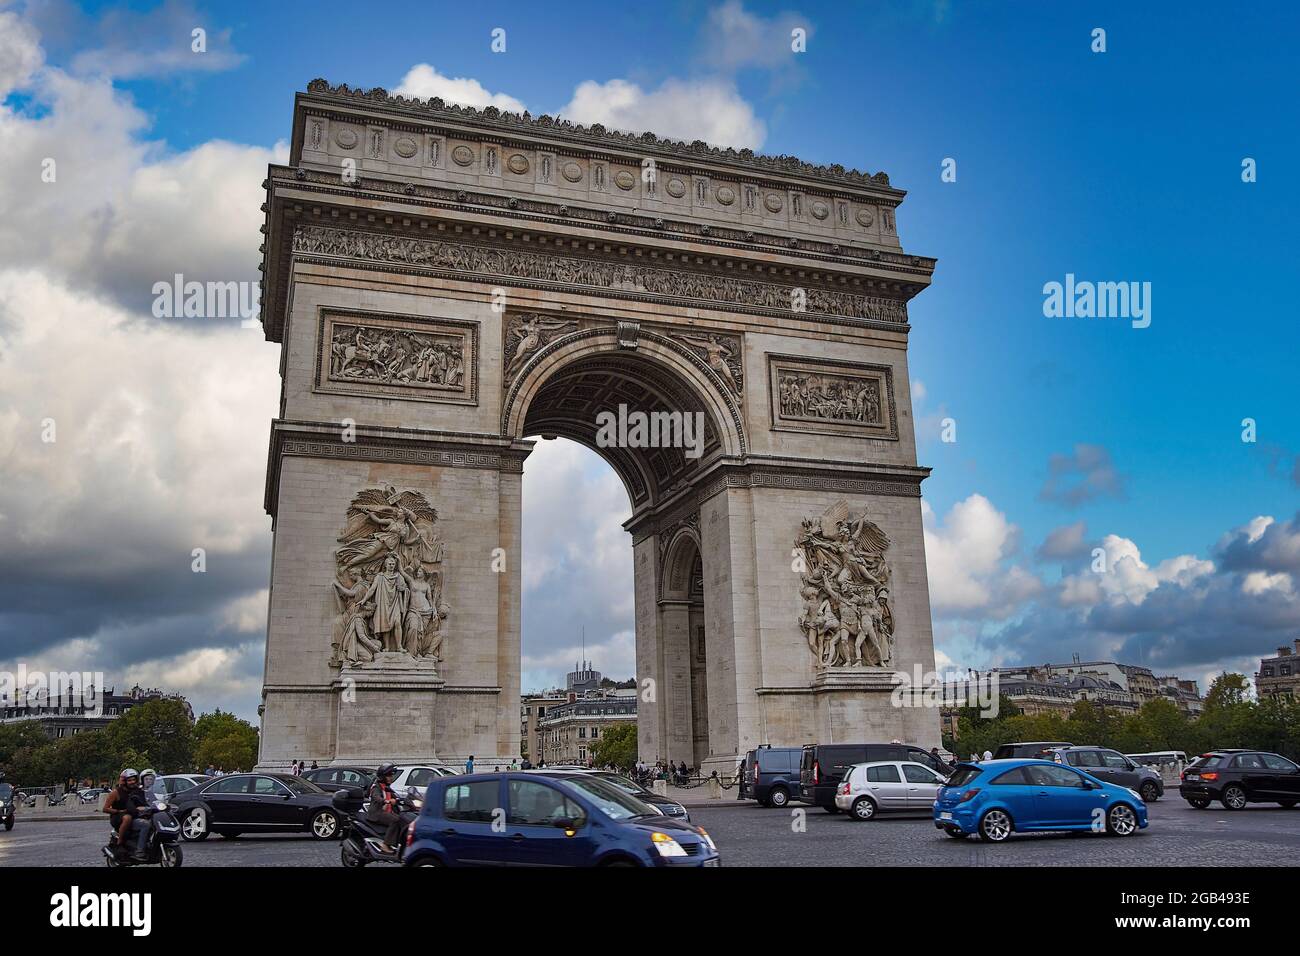 Nuvole nell'Arc de Triomphe de l'Étoile, Place Charles-de-Gaulle (Place de l'Elysée) degli Champs-Elysees, sotto un bel cielo, a Parigi, Francia Foto Stock